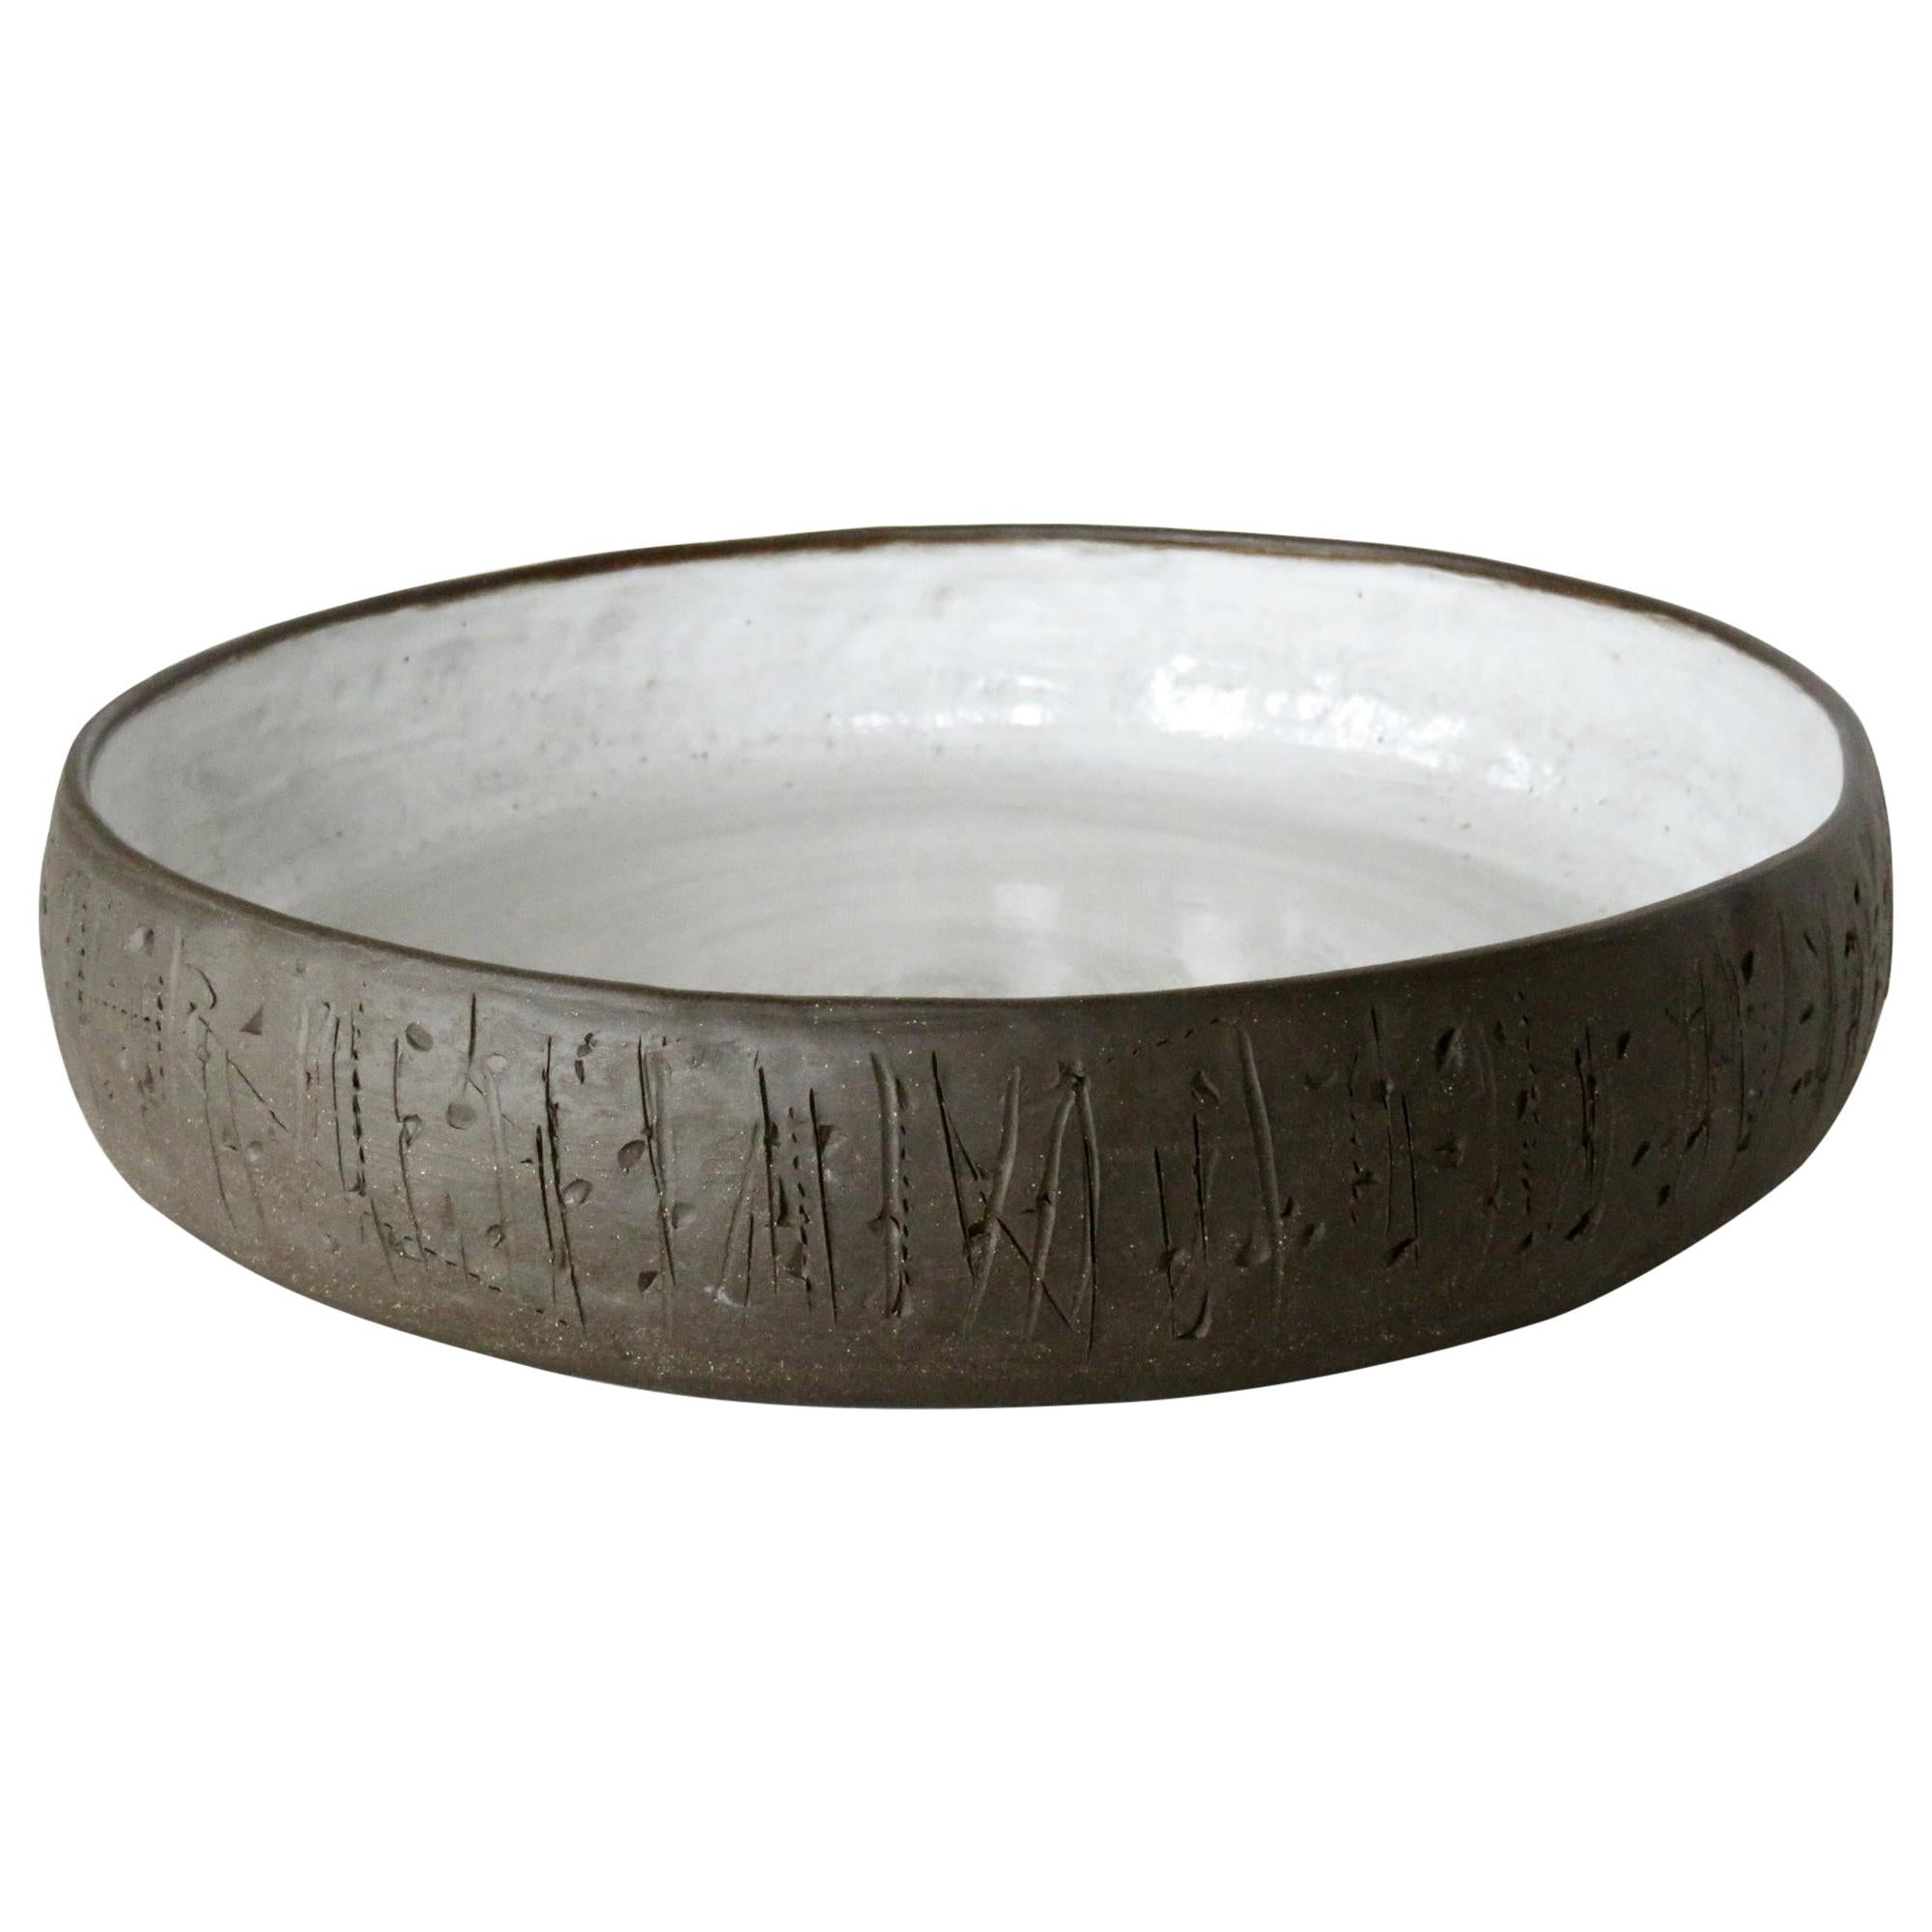 Carved Ceramic Serving Bowl, Dark Brown Clay, White Glaze Interior, Handbuilt